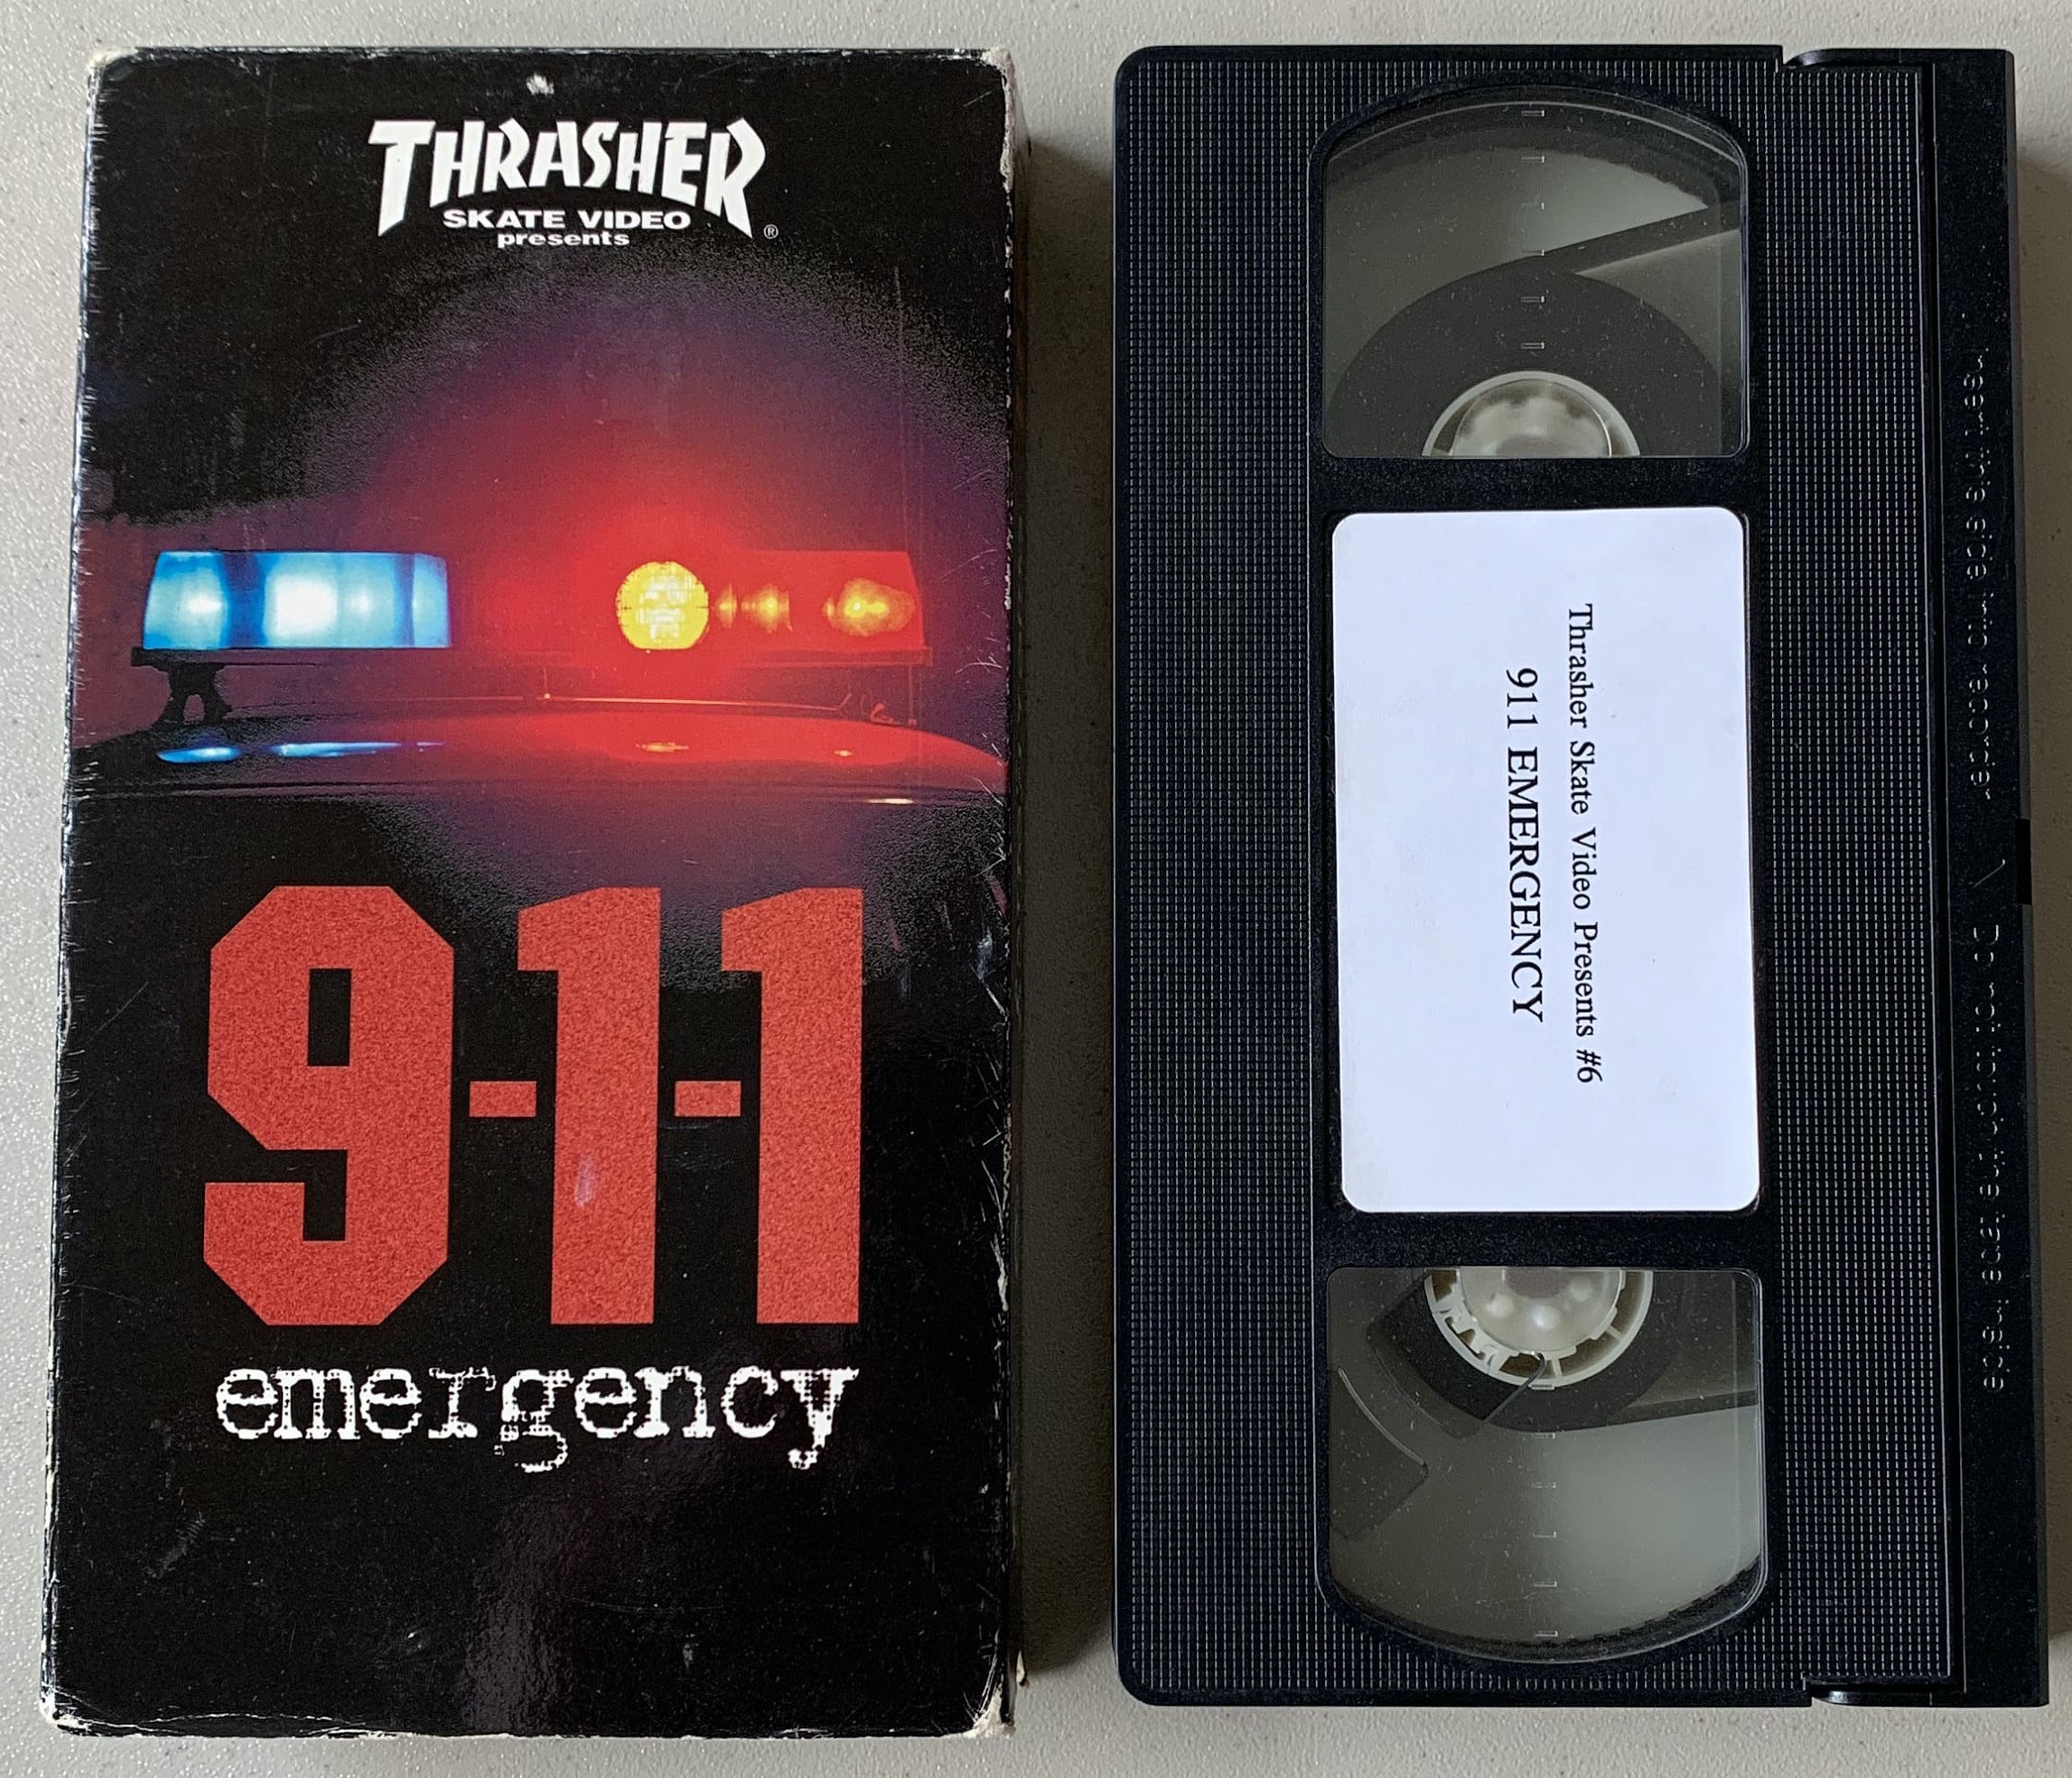 Thrasher - 911 Emergency cover art